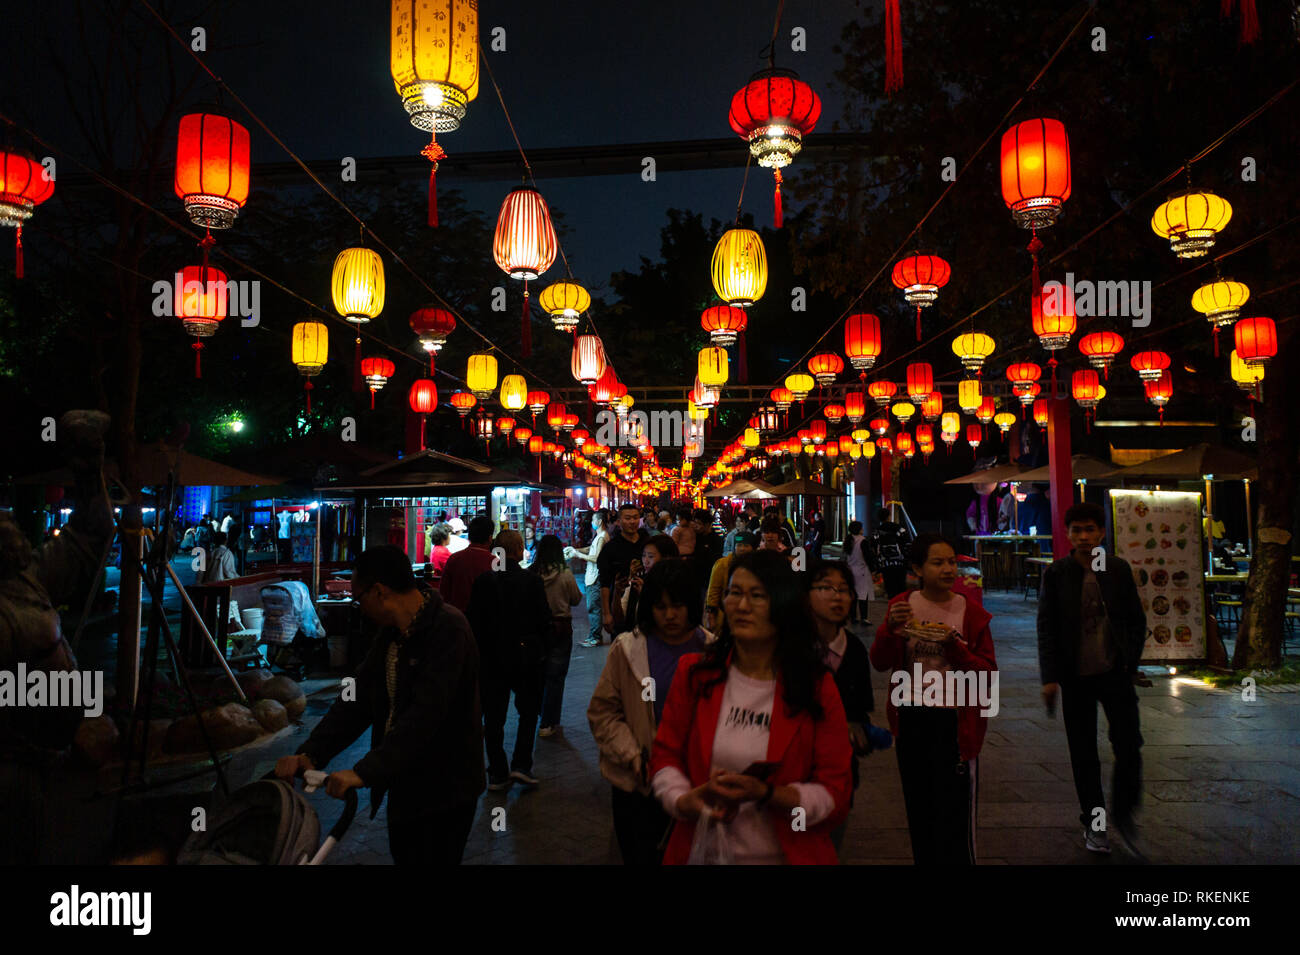 Lanternes chinoises pendant la nuit au cours de Lantern Festival célébré avec lanterne colorée affichages et décorations à la Chine Splendide, un parc à thème de la culture chinoise à Shenzhen, Chine. Banque D'Images